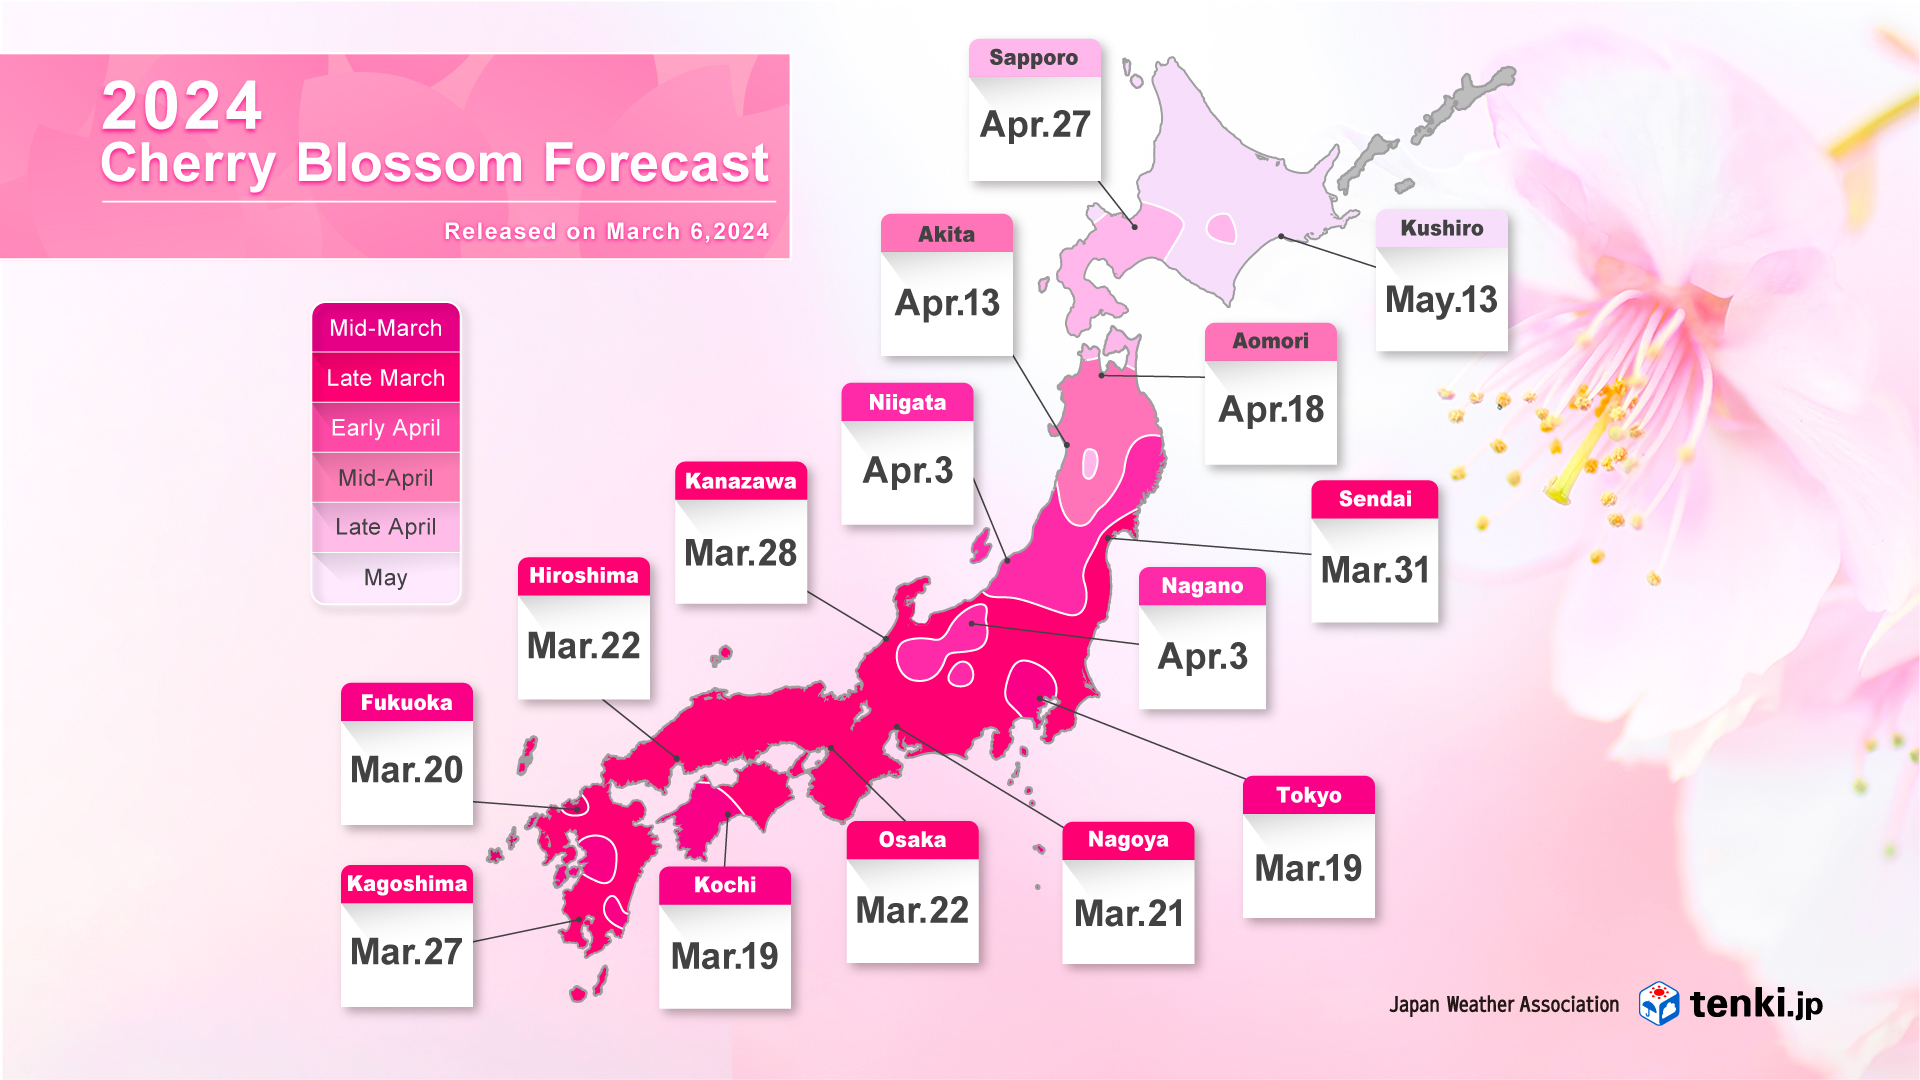 Cherry blossom forecast map